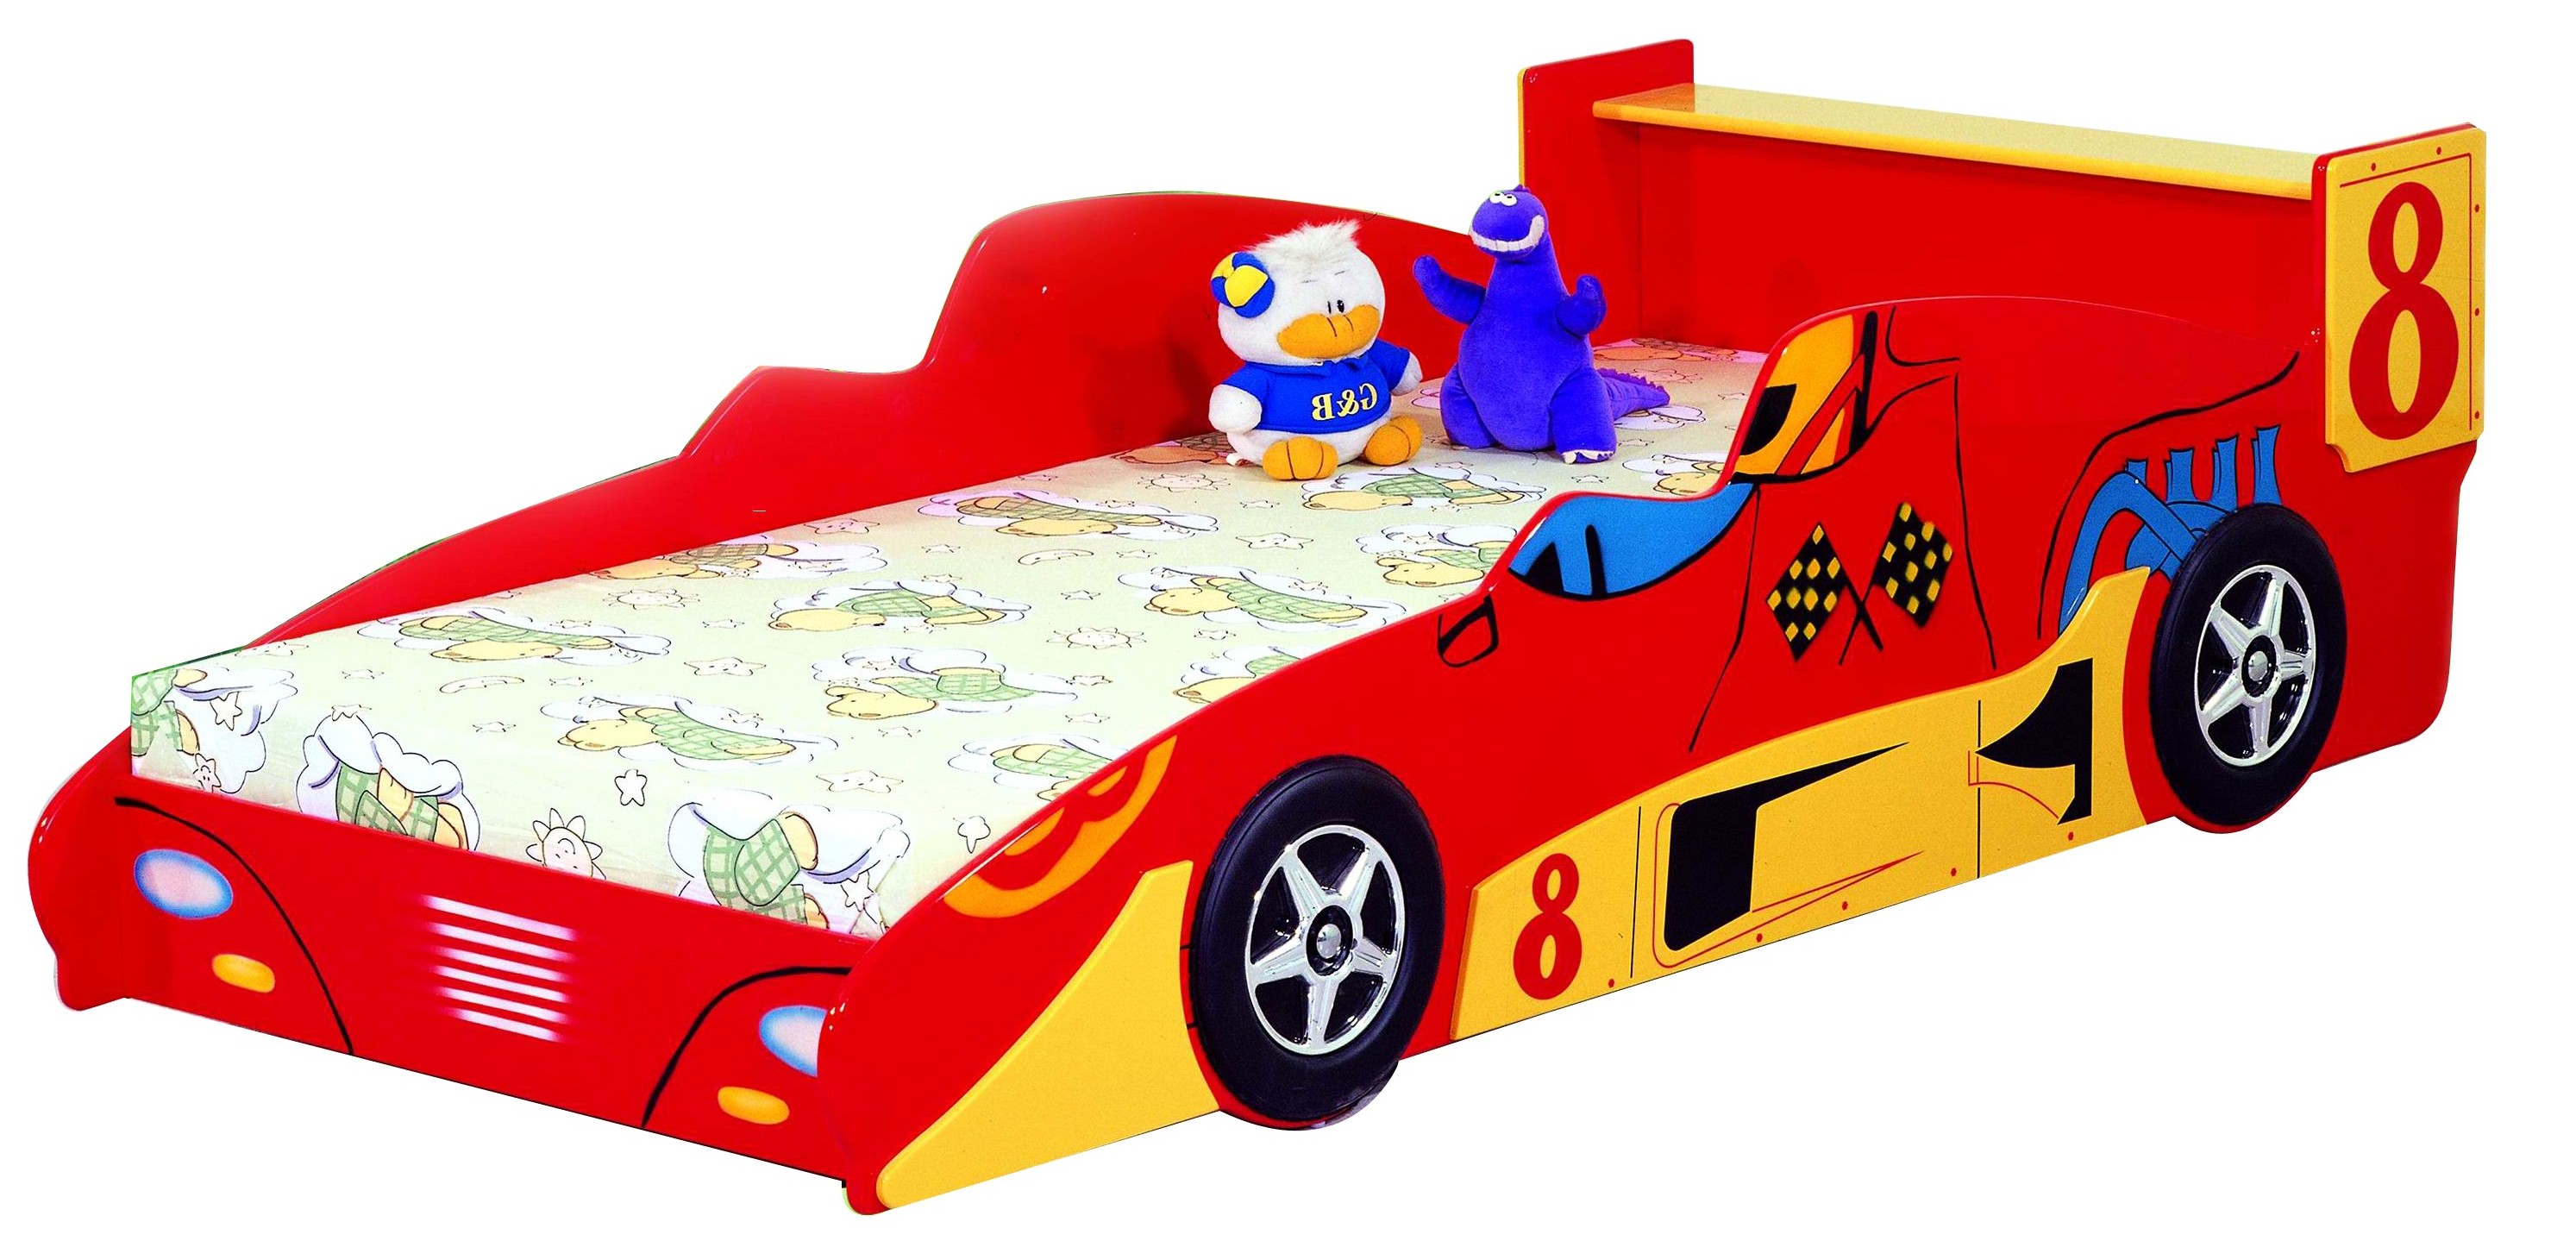 Детская кровать - Гоночная машина Формула 1 -  Racing Car F1, артикул 350, кровать для ребенка в возрасте от 3-х до 16 лет, кровать машина из МДФ, цвет красный